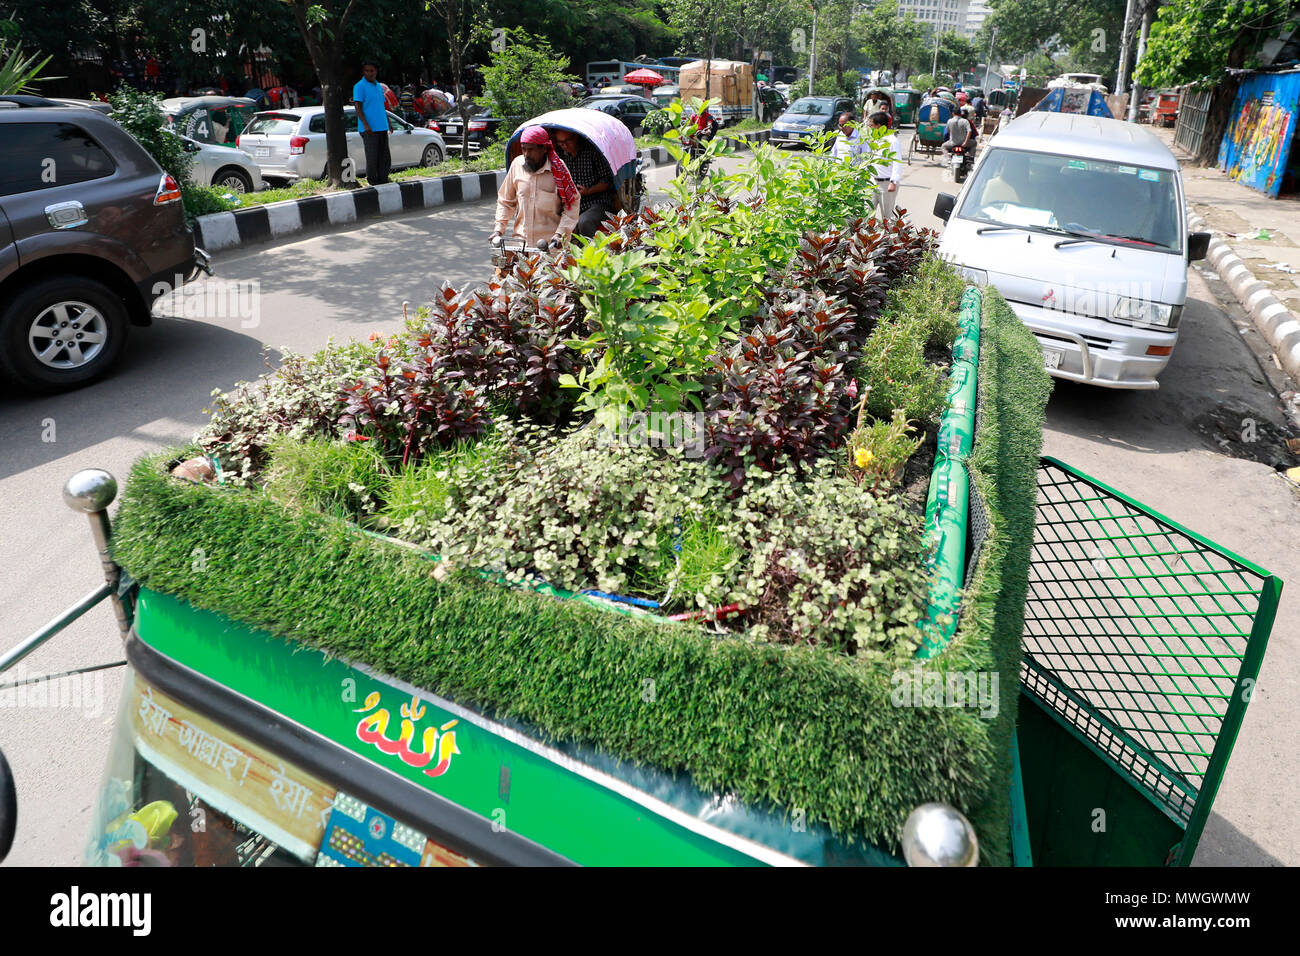 Dhaka, Bangladesh - May 12, 2018: A green environmental friendly Bangladeshi CNG three-wheeler transport with mini-garden on its rooftop, in Dhaka, Ba Stock Photo